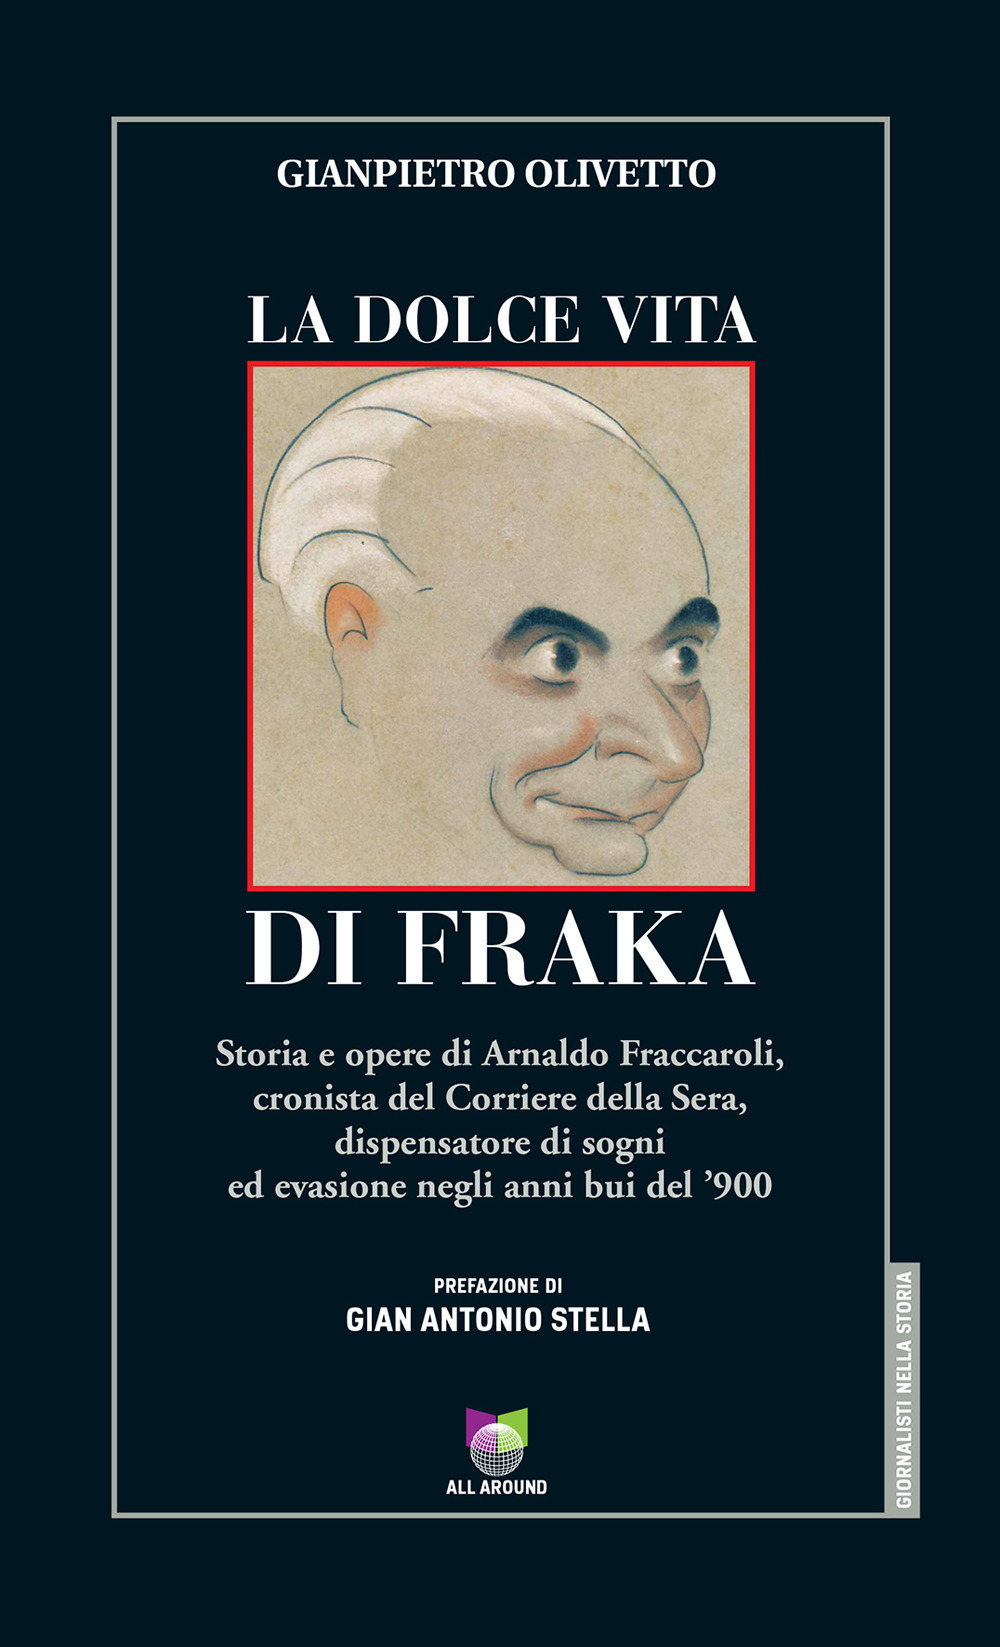 La dolce vita di Fraka. Storia di Arnaldo Fraccaroli, cronista del Corriere della Sera